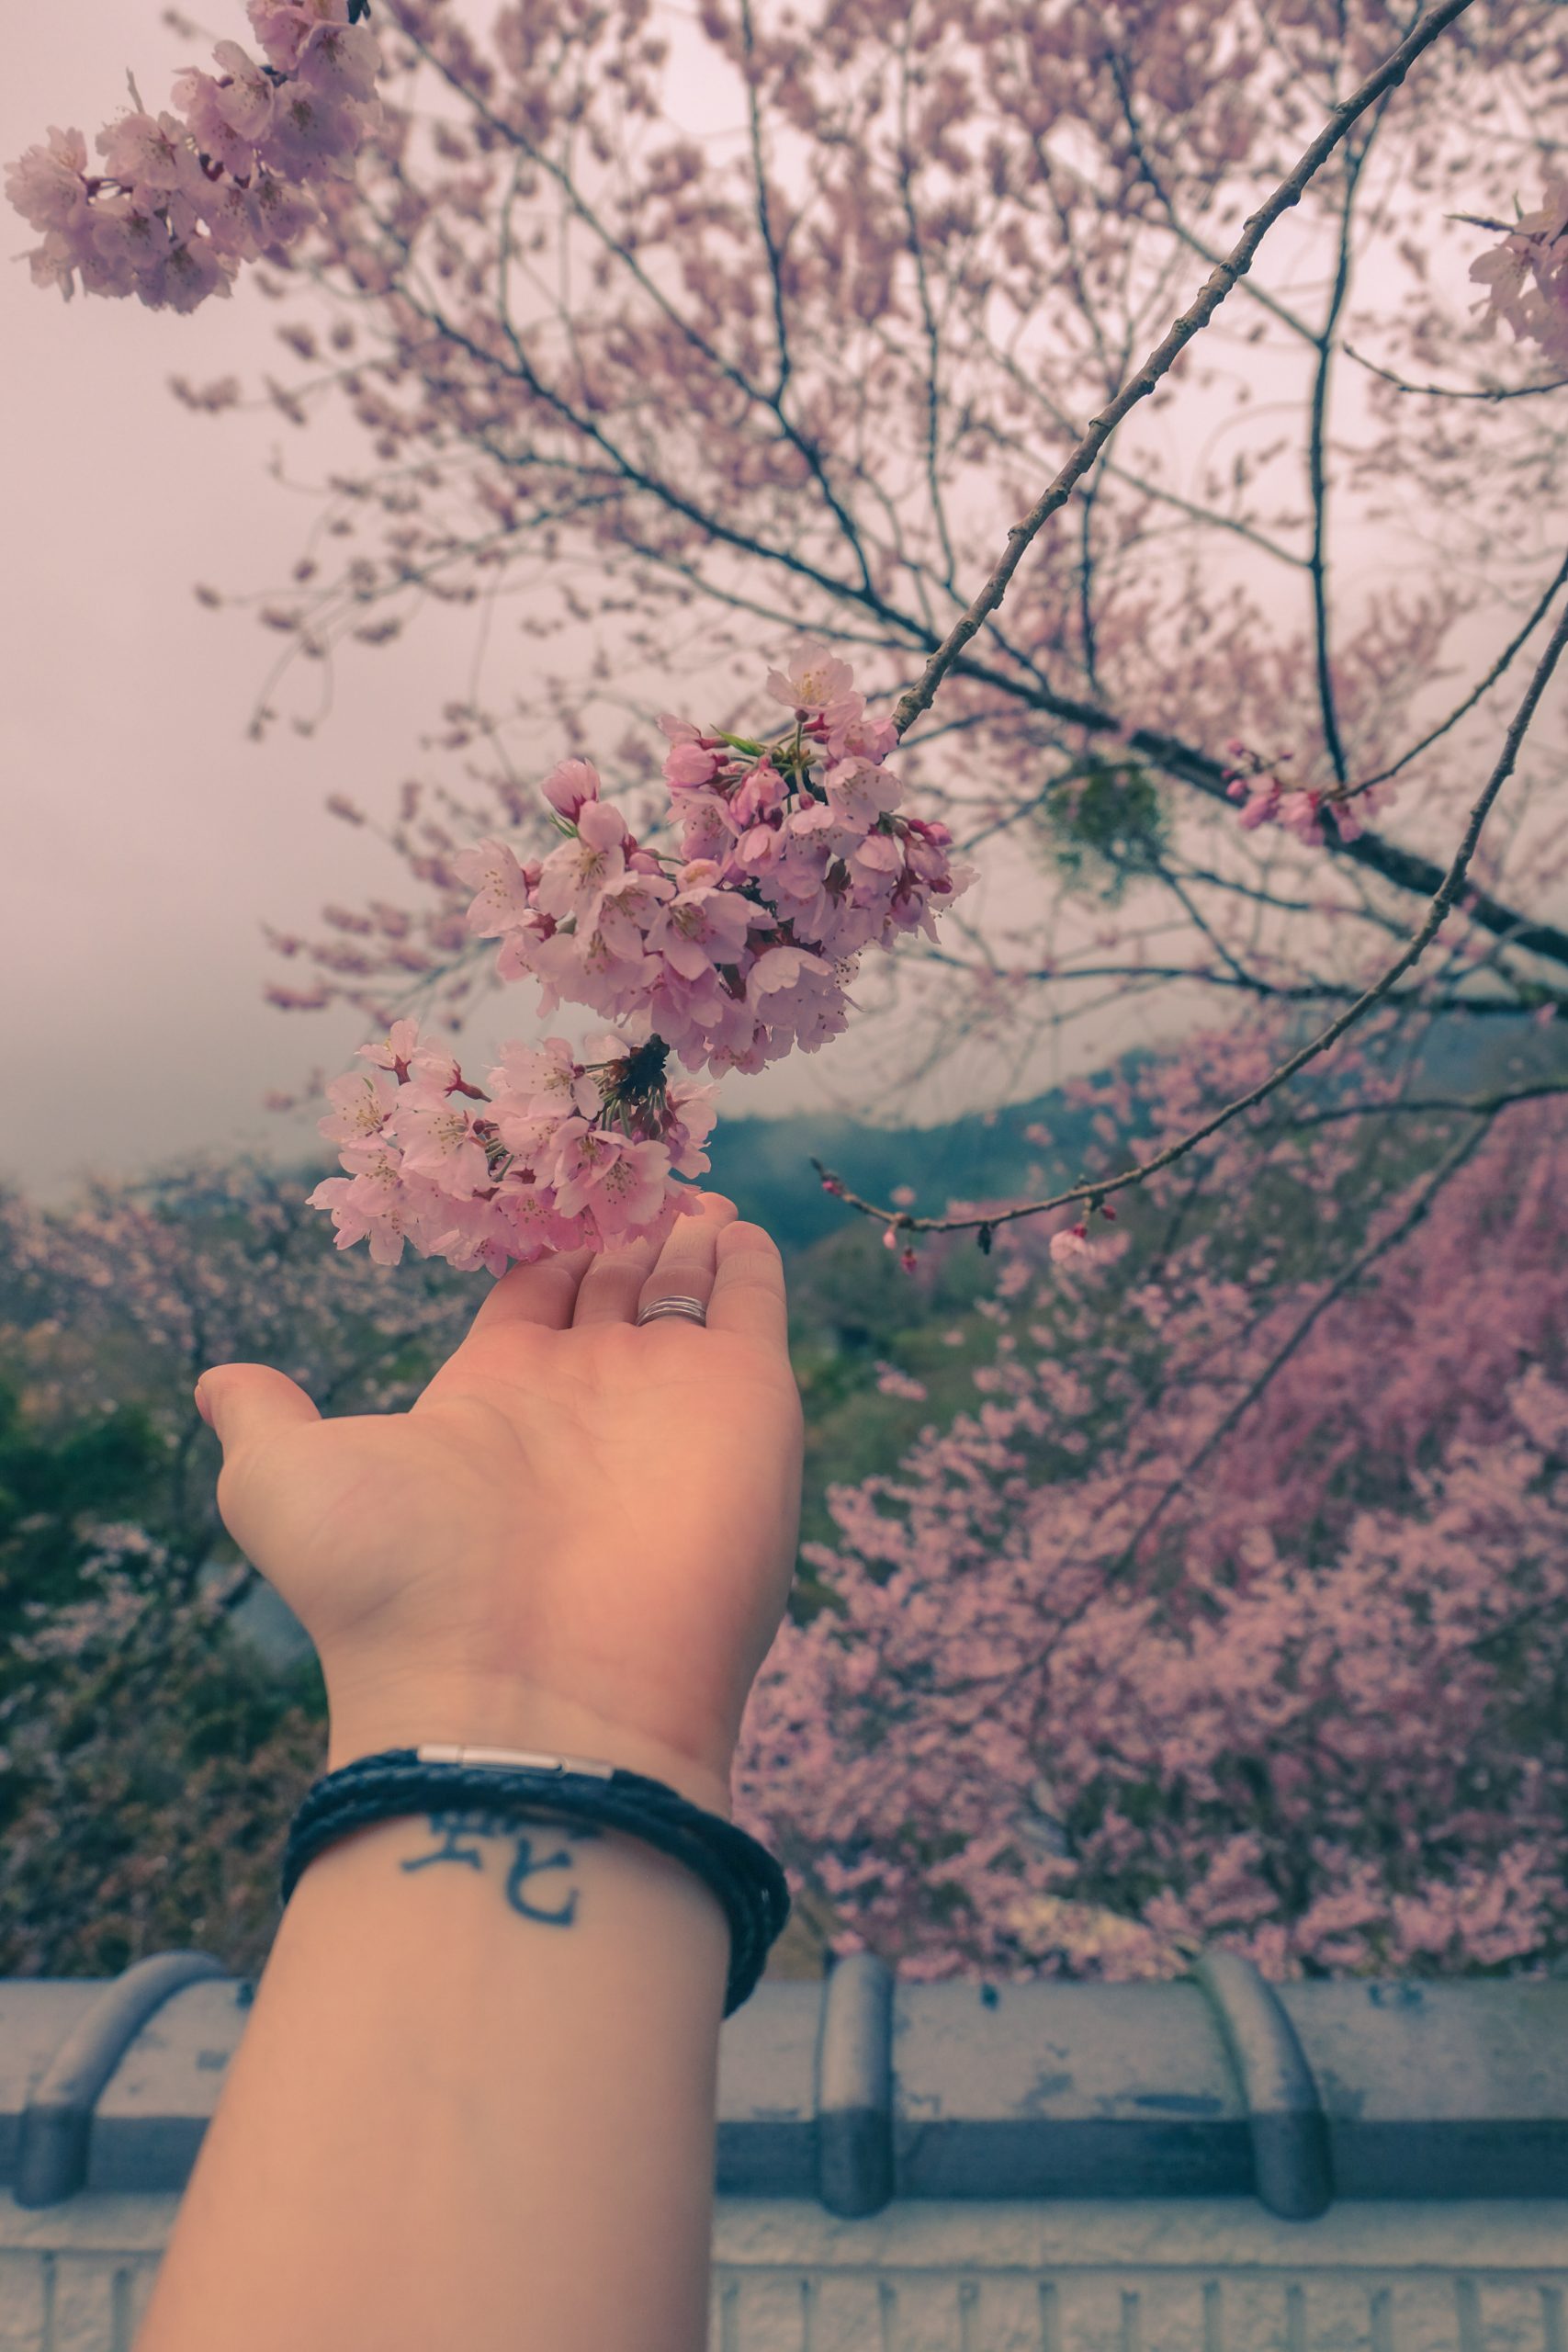 Cory Varga touching sakura in Yoshino, Japan with her wrist tattoo visible